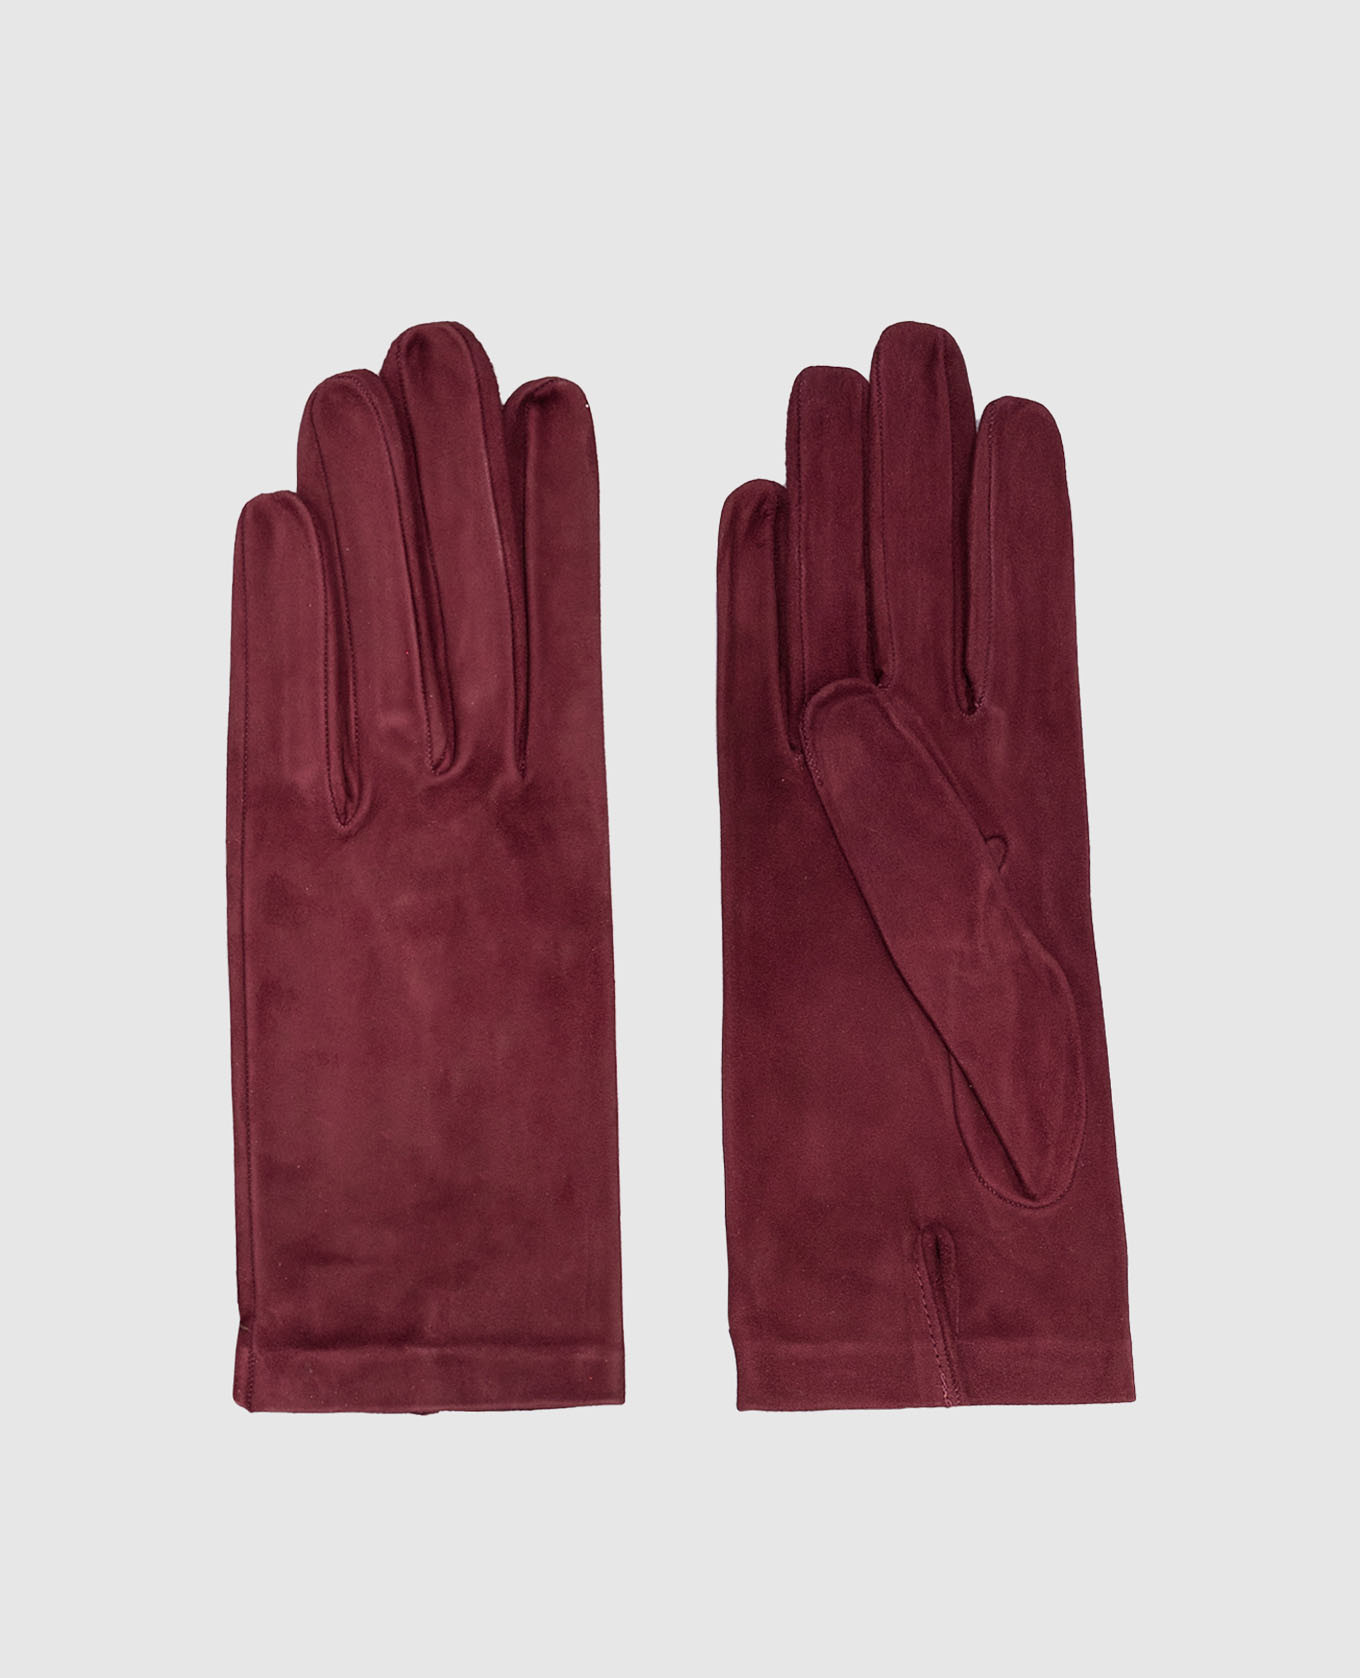 Burgundy suede gloves